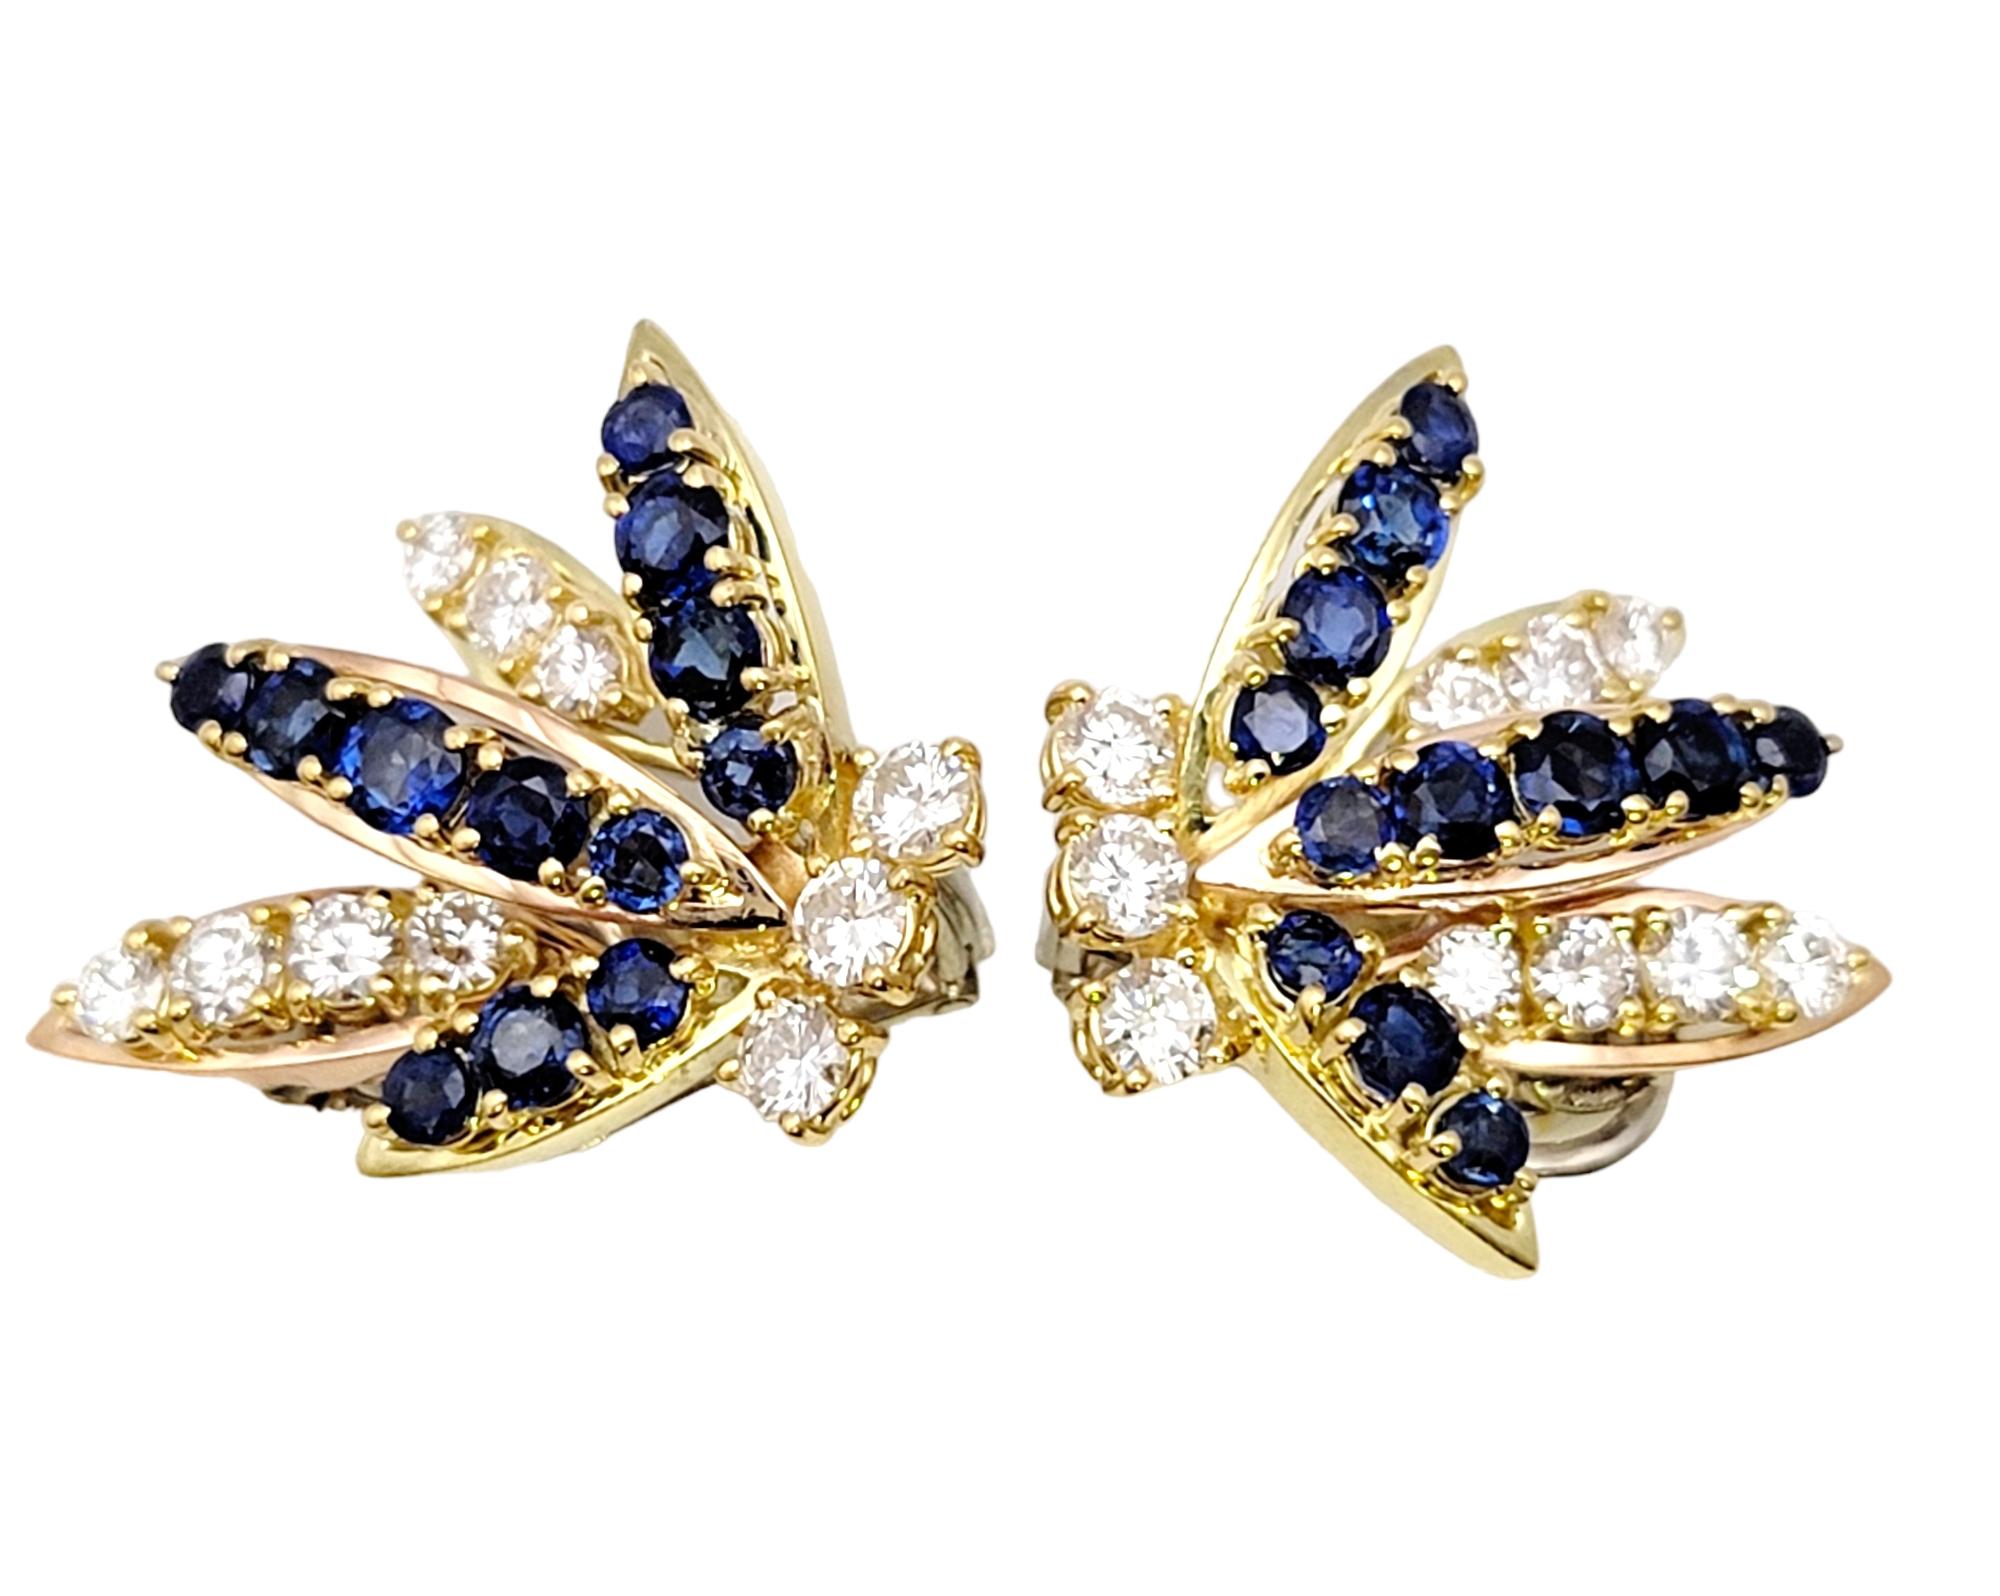 Atemberaubende Ohrringe mit Diamanten und Saphiren. Dieses exquisite Paar zeichnet sich durch eisweiße Diamanten und leuchtend blaue Saphire aus, die in einem atemberaubenden Sprühdesign aus dem Ohrläppchen hervorbrechen. Das Licht wird von den